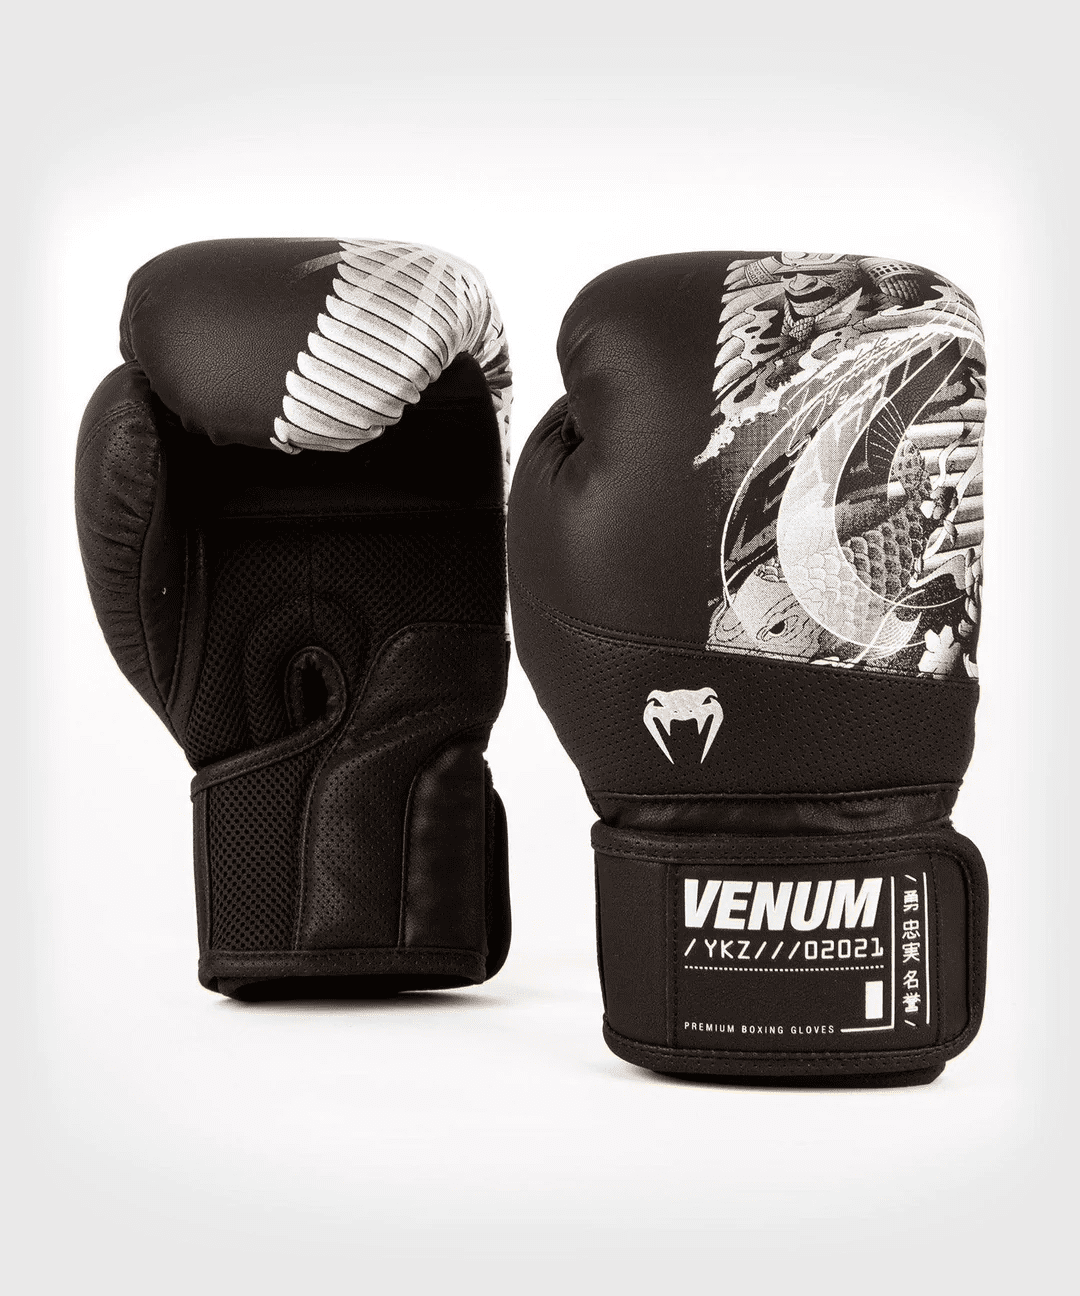 Venum Classic Boxing Gloves - Unisex - Black - 16 oz